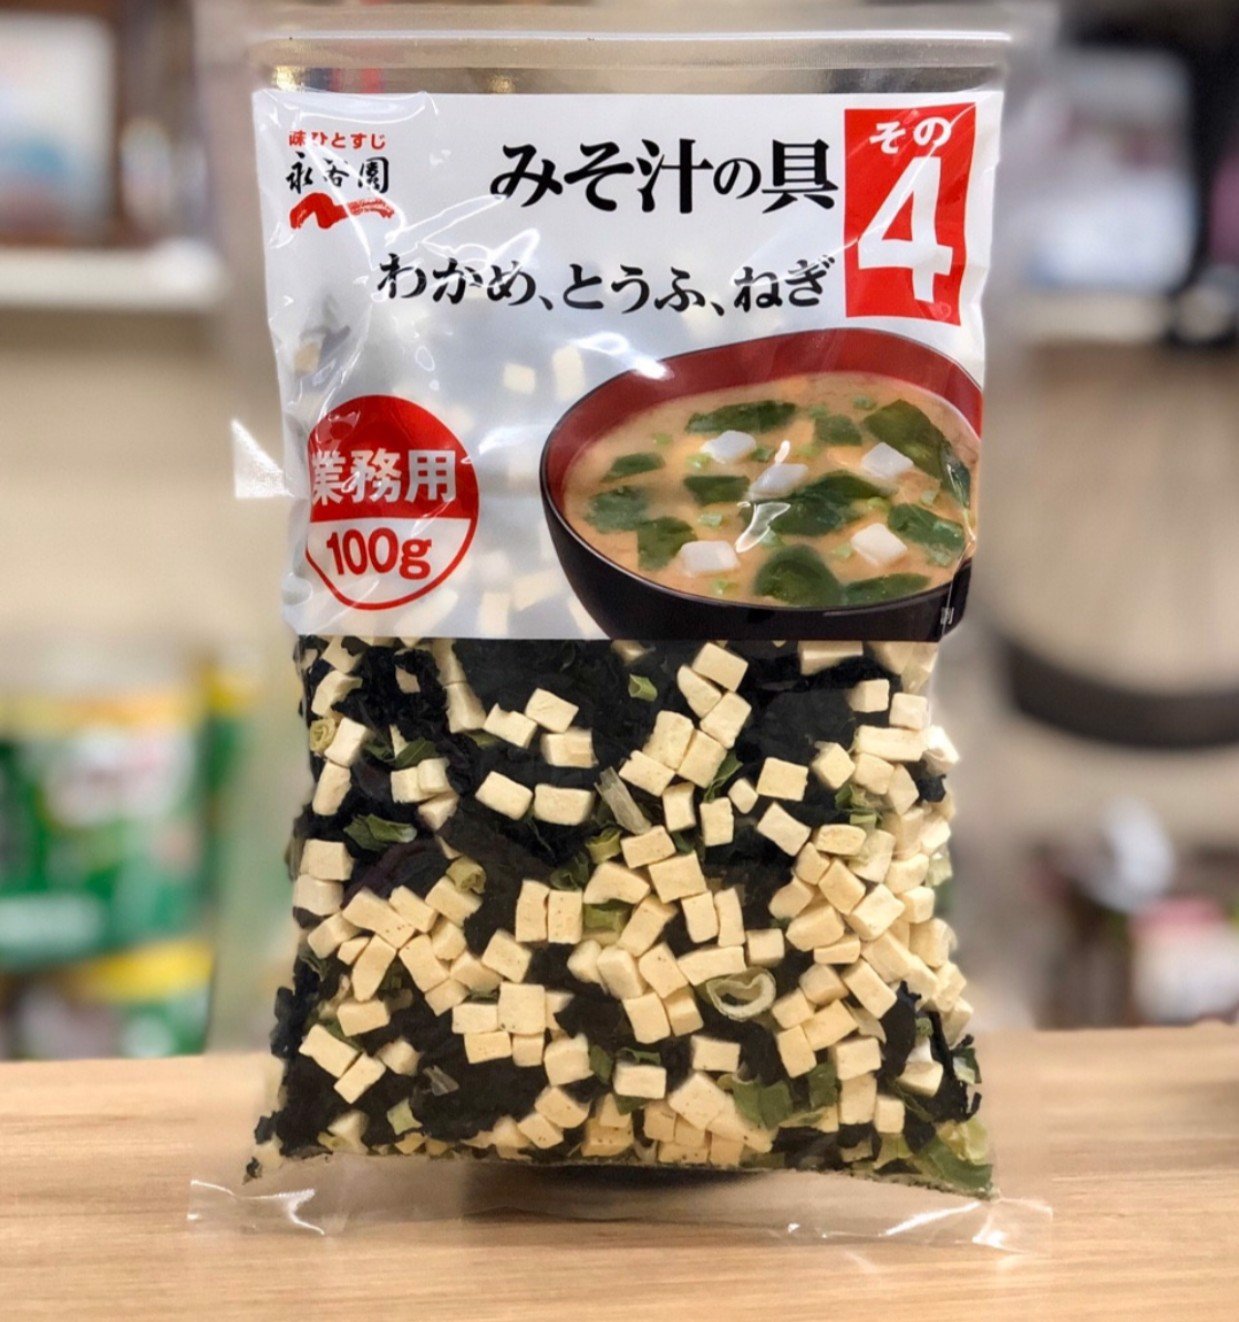 Rong biển đậu phụ wakame khô gói 100g - Nội địa Nhật Bản